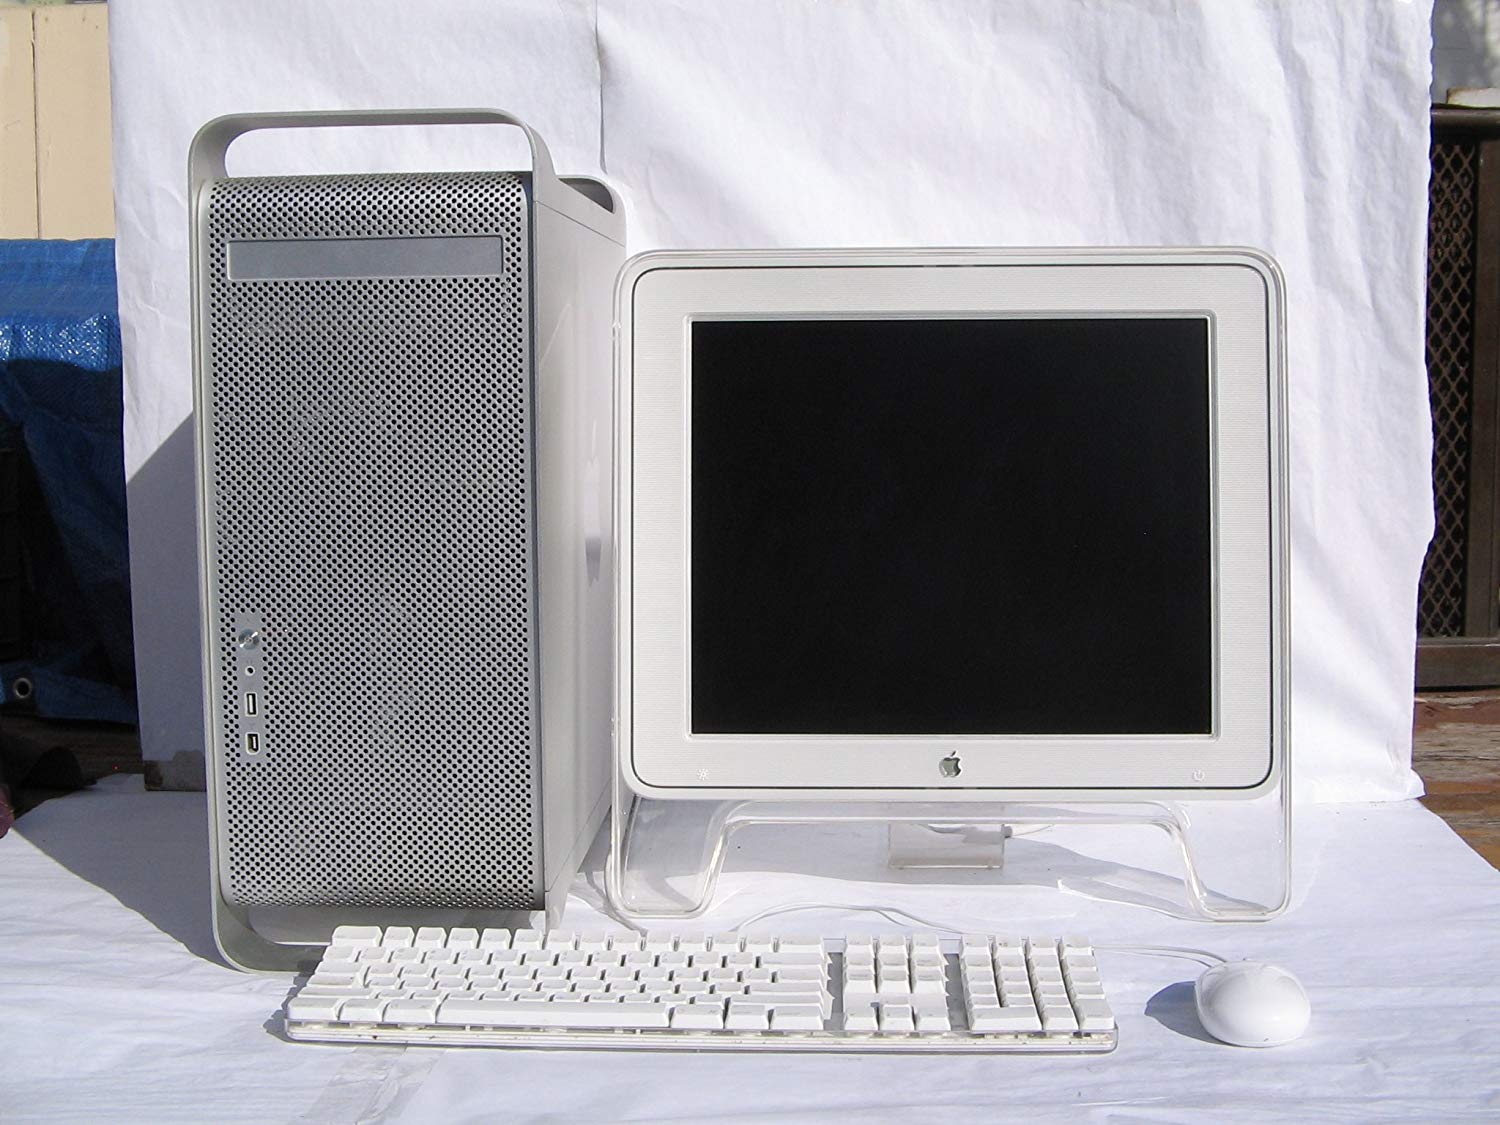 Этот день в истории Apple: выходит первый в мире Power Mac G5 с 64-битным процессором